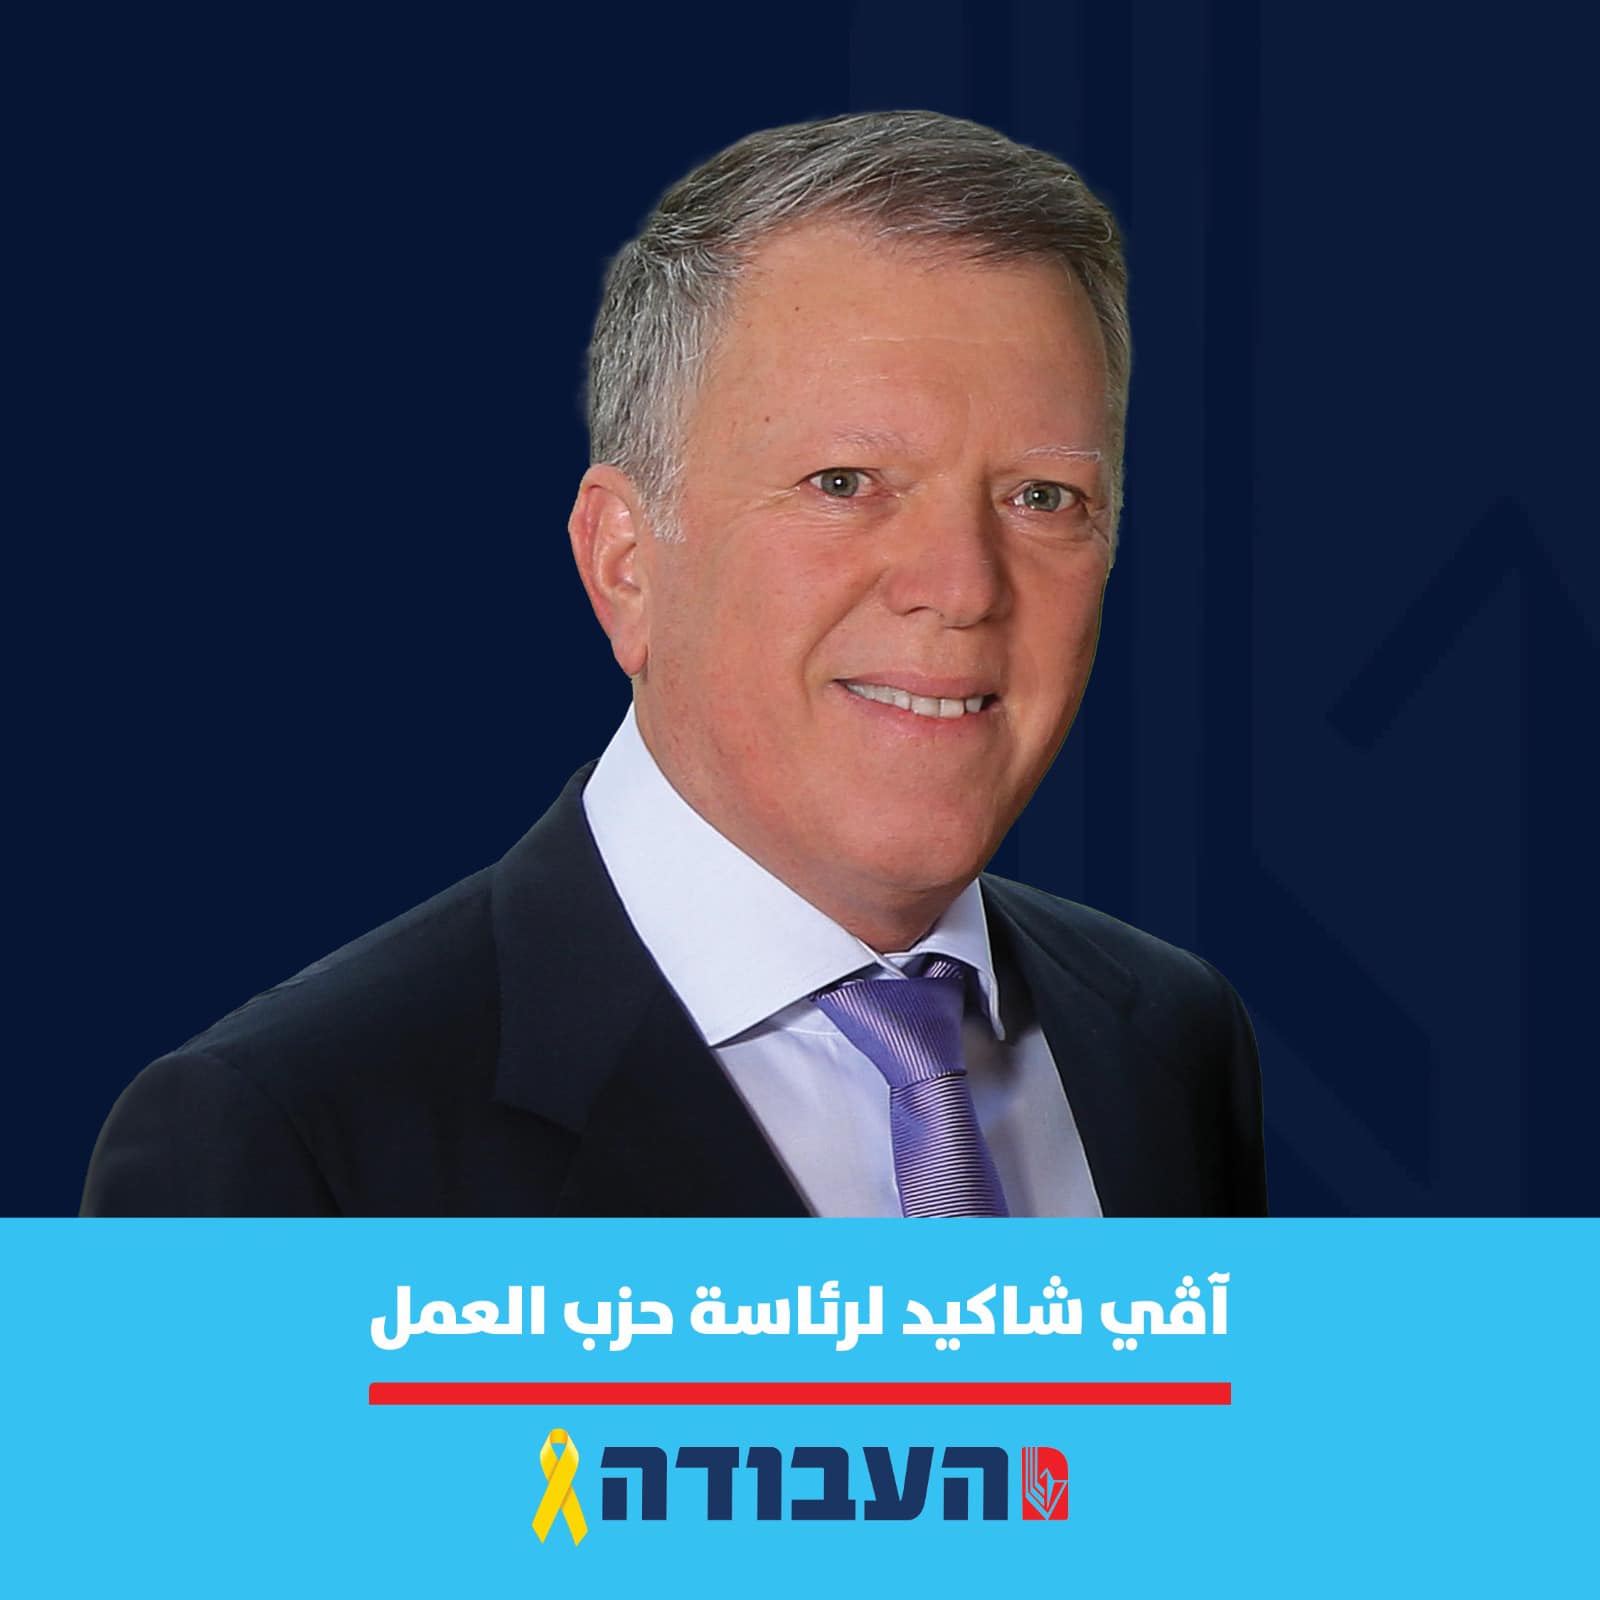 افي شاكيد: أدعم تنصيب عربي لرئاسة الحكومة!